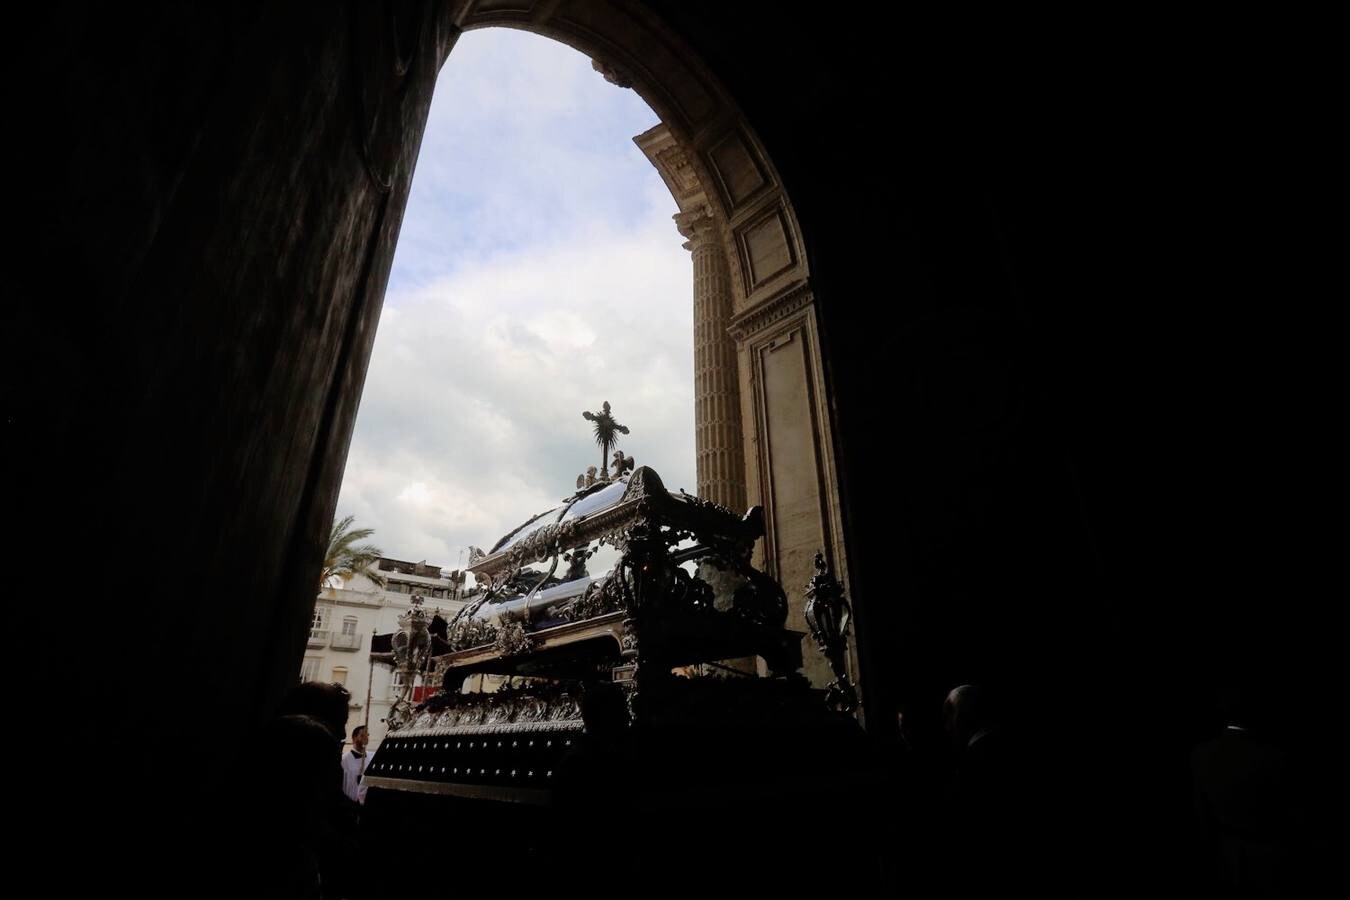 VÍDEO: La cruz de Soledad golpea en el arco de la puerta de Santa Cruz de Cádiz